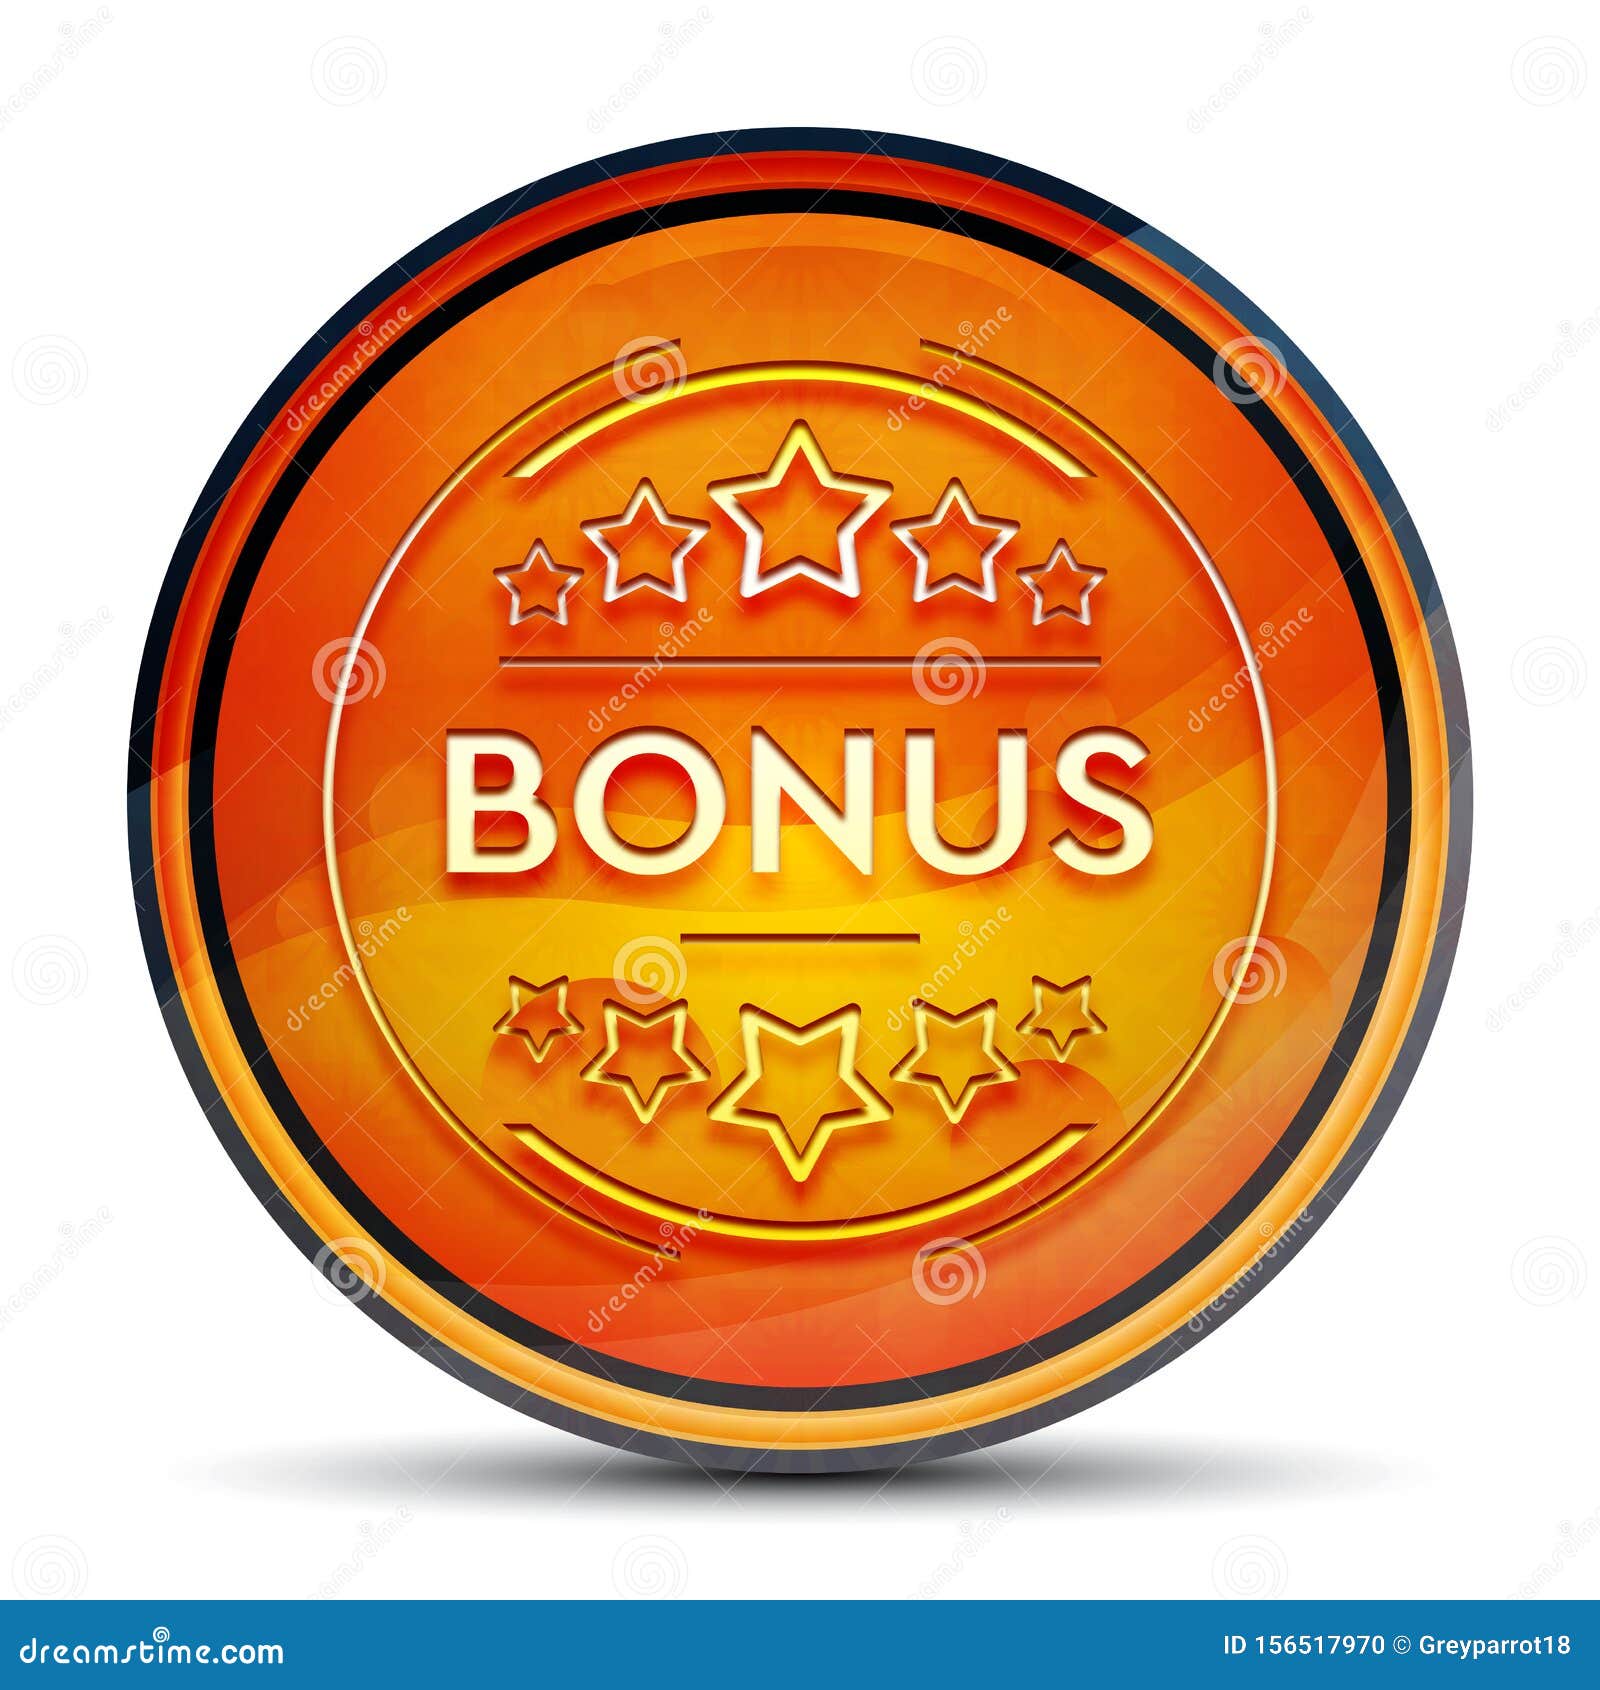 bonus s